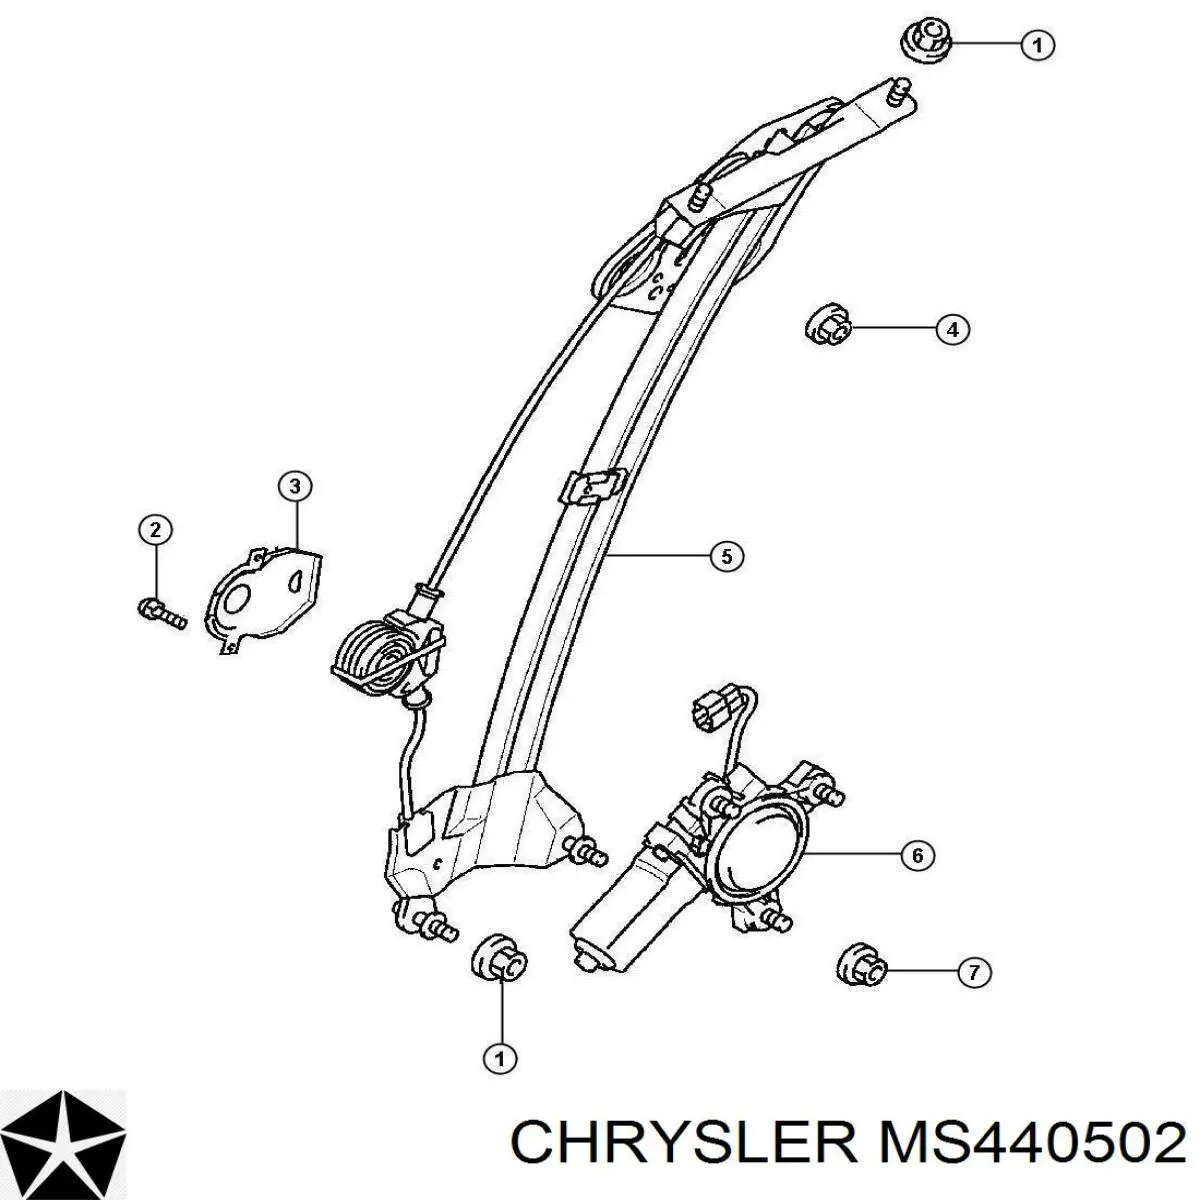 MS440502 Chrysler tornillo (tuerca de sujeción)